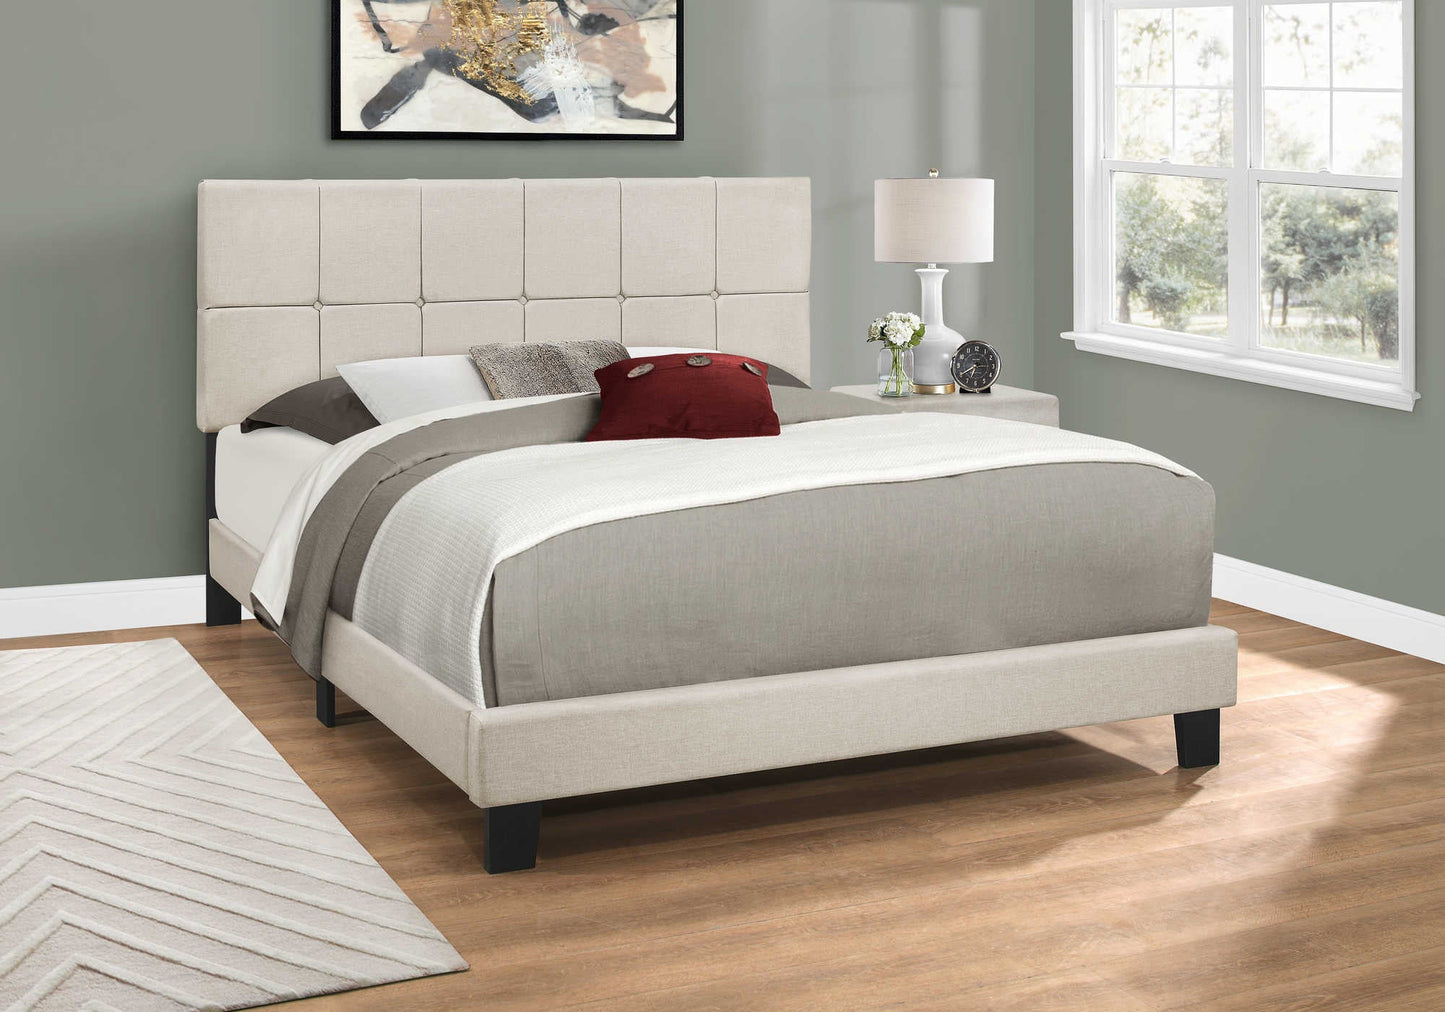 Queen Size Low-profile Platform Bed in Beige Linen Upholstery